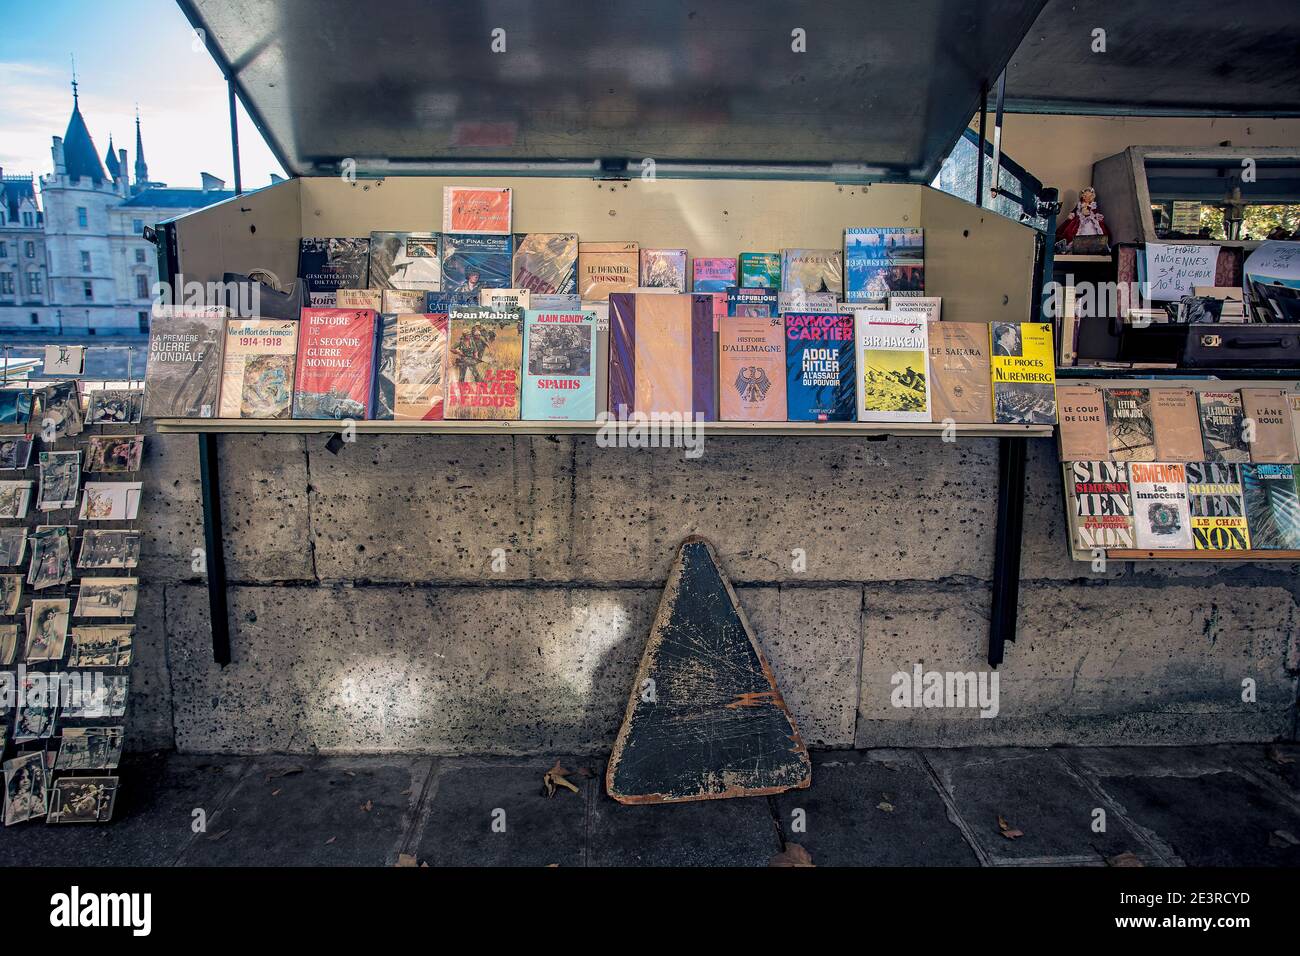 FRANCE / IIe-de-France / Paris / Bouquinistes / Les Bouquinistes, riverside booksellers. Stock Photo